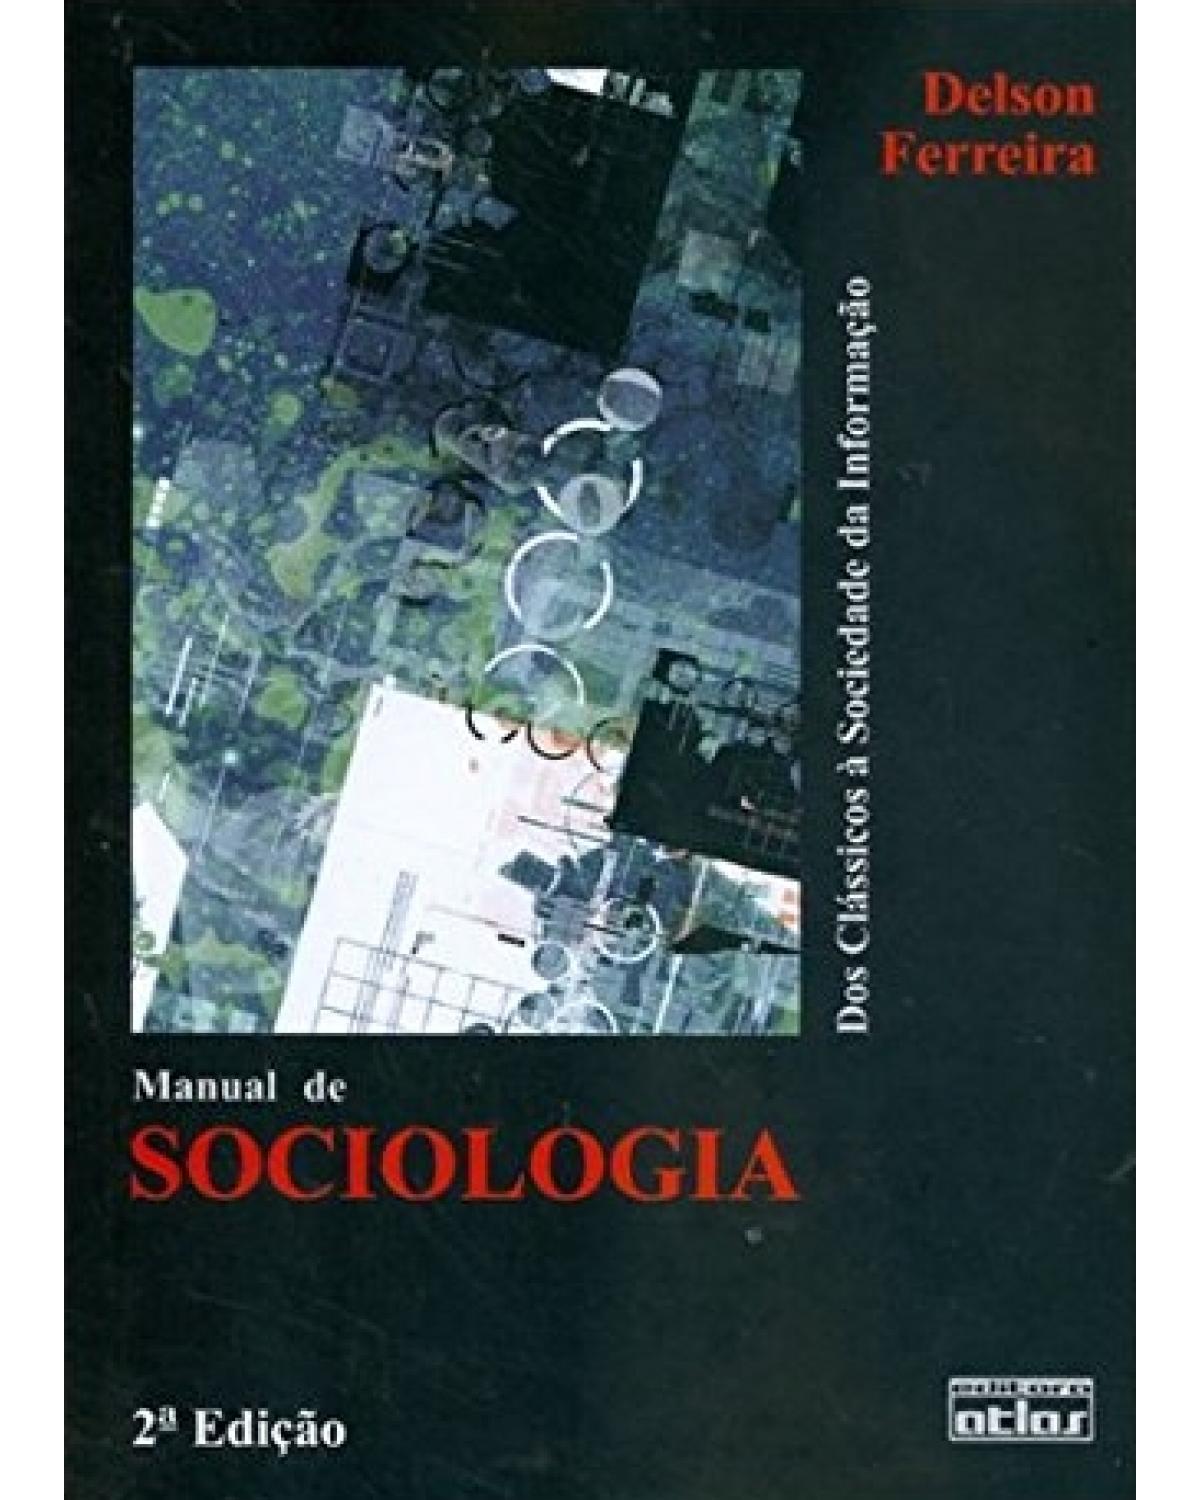 Manual de sociologia - Dos clássicos à sociedade da informação - 2ª Edição | 2003